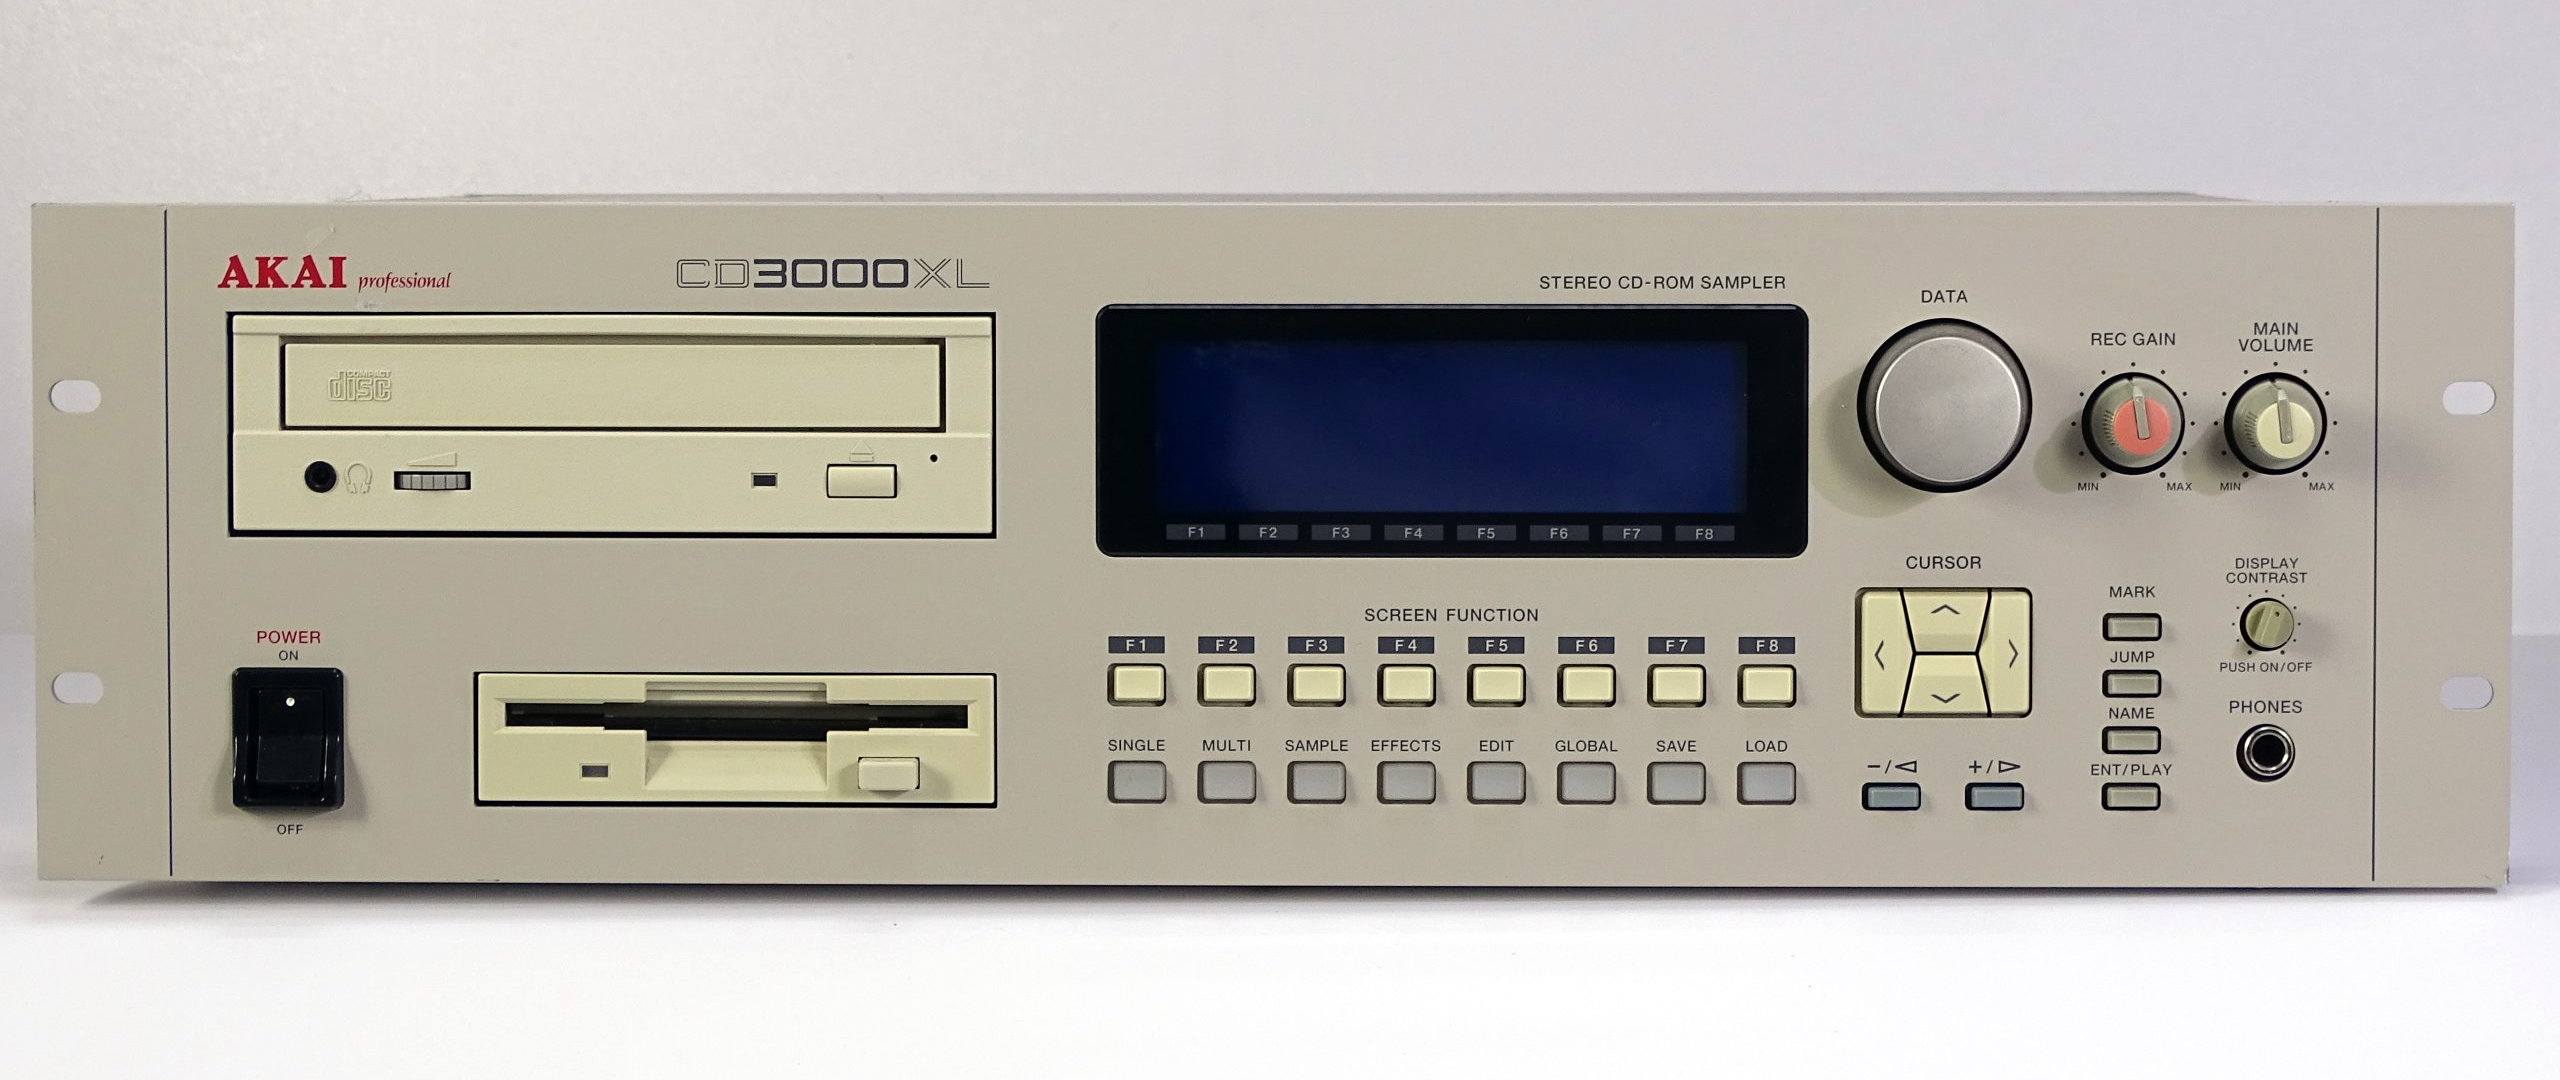 Akai CD3000XL MIDI Stereo CD-ROM Sampler, (10MB)